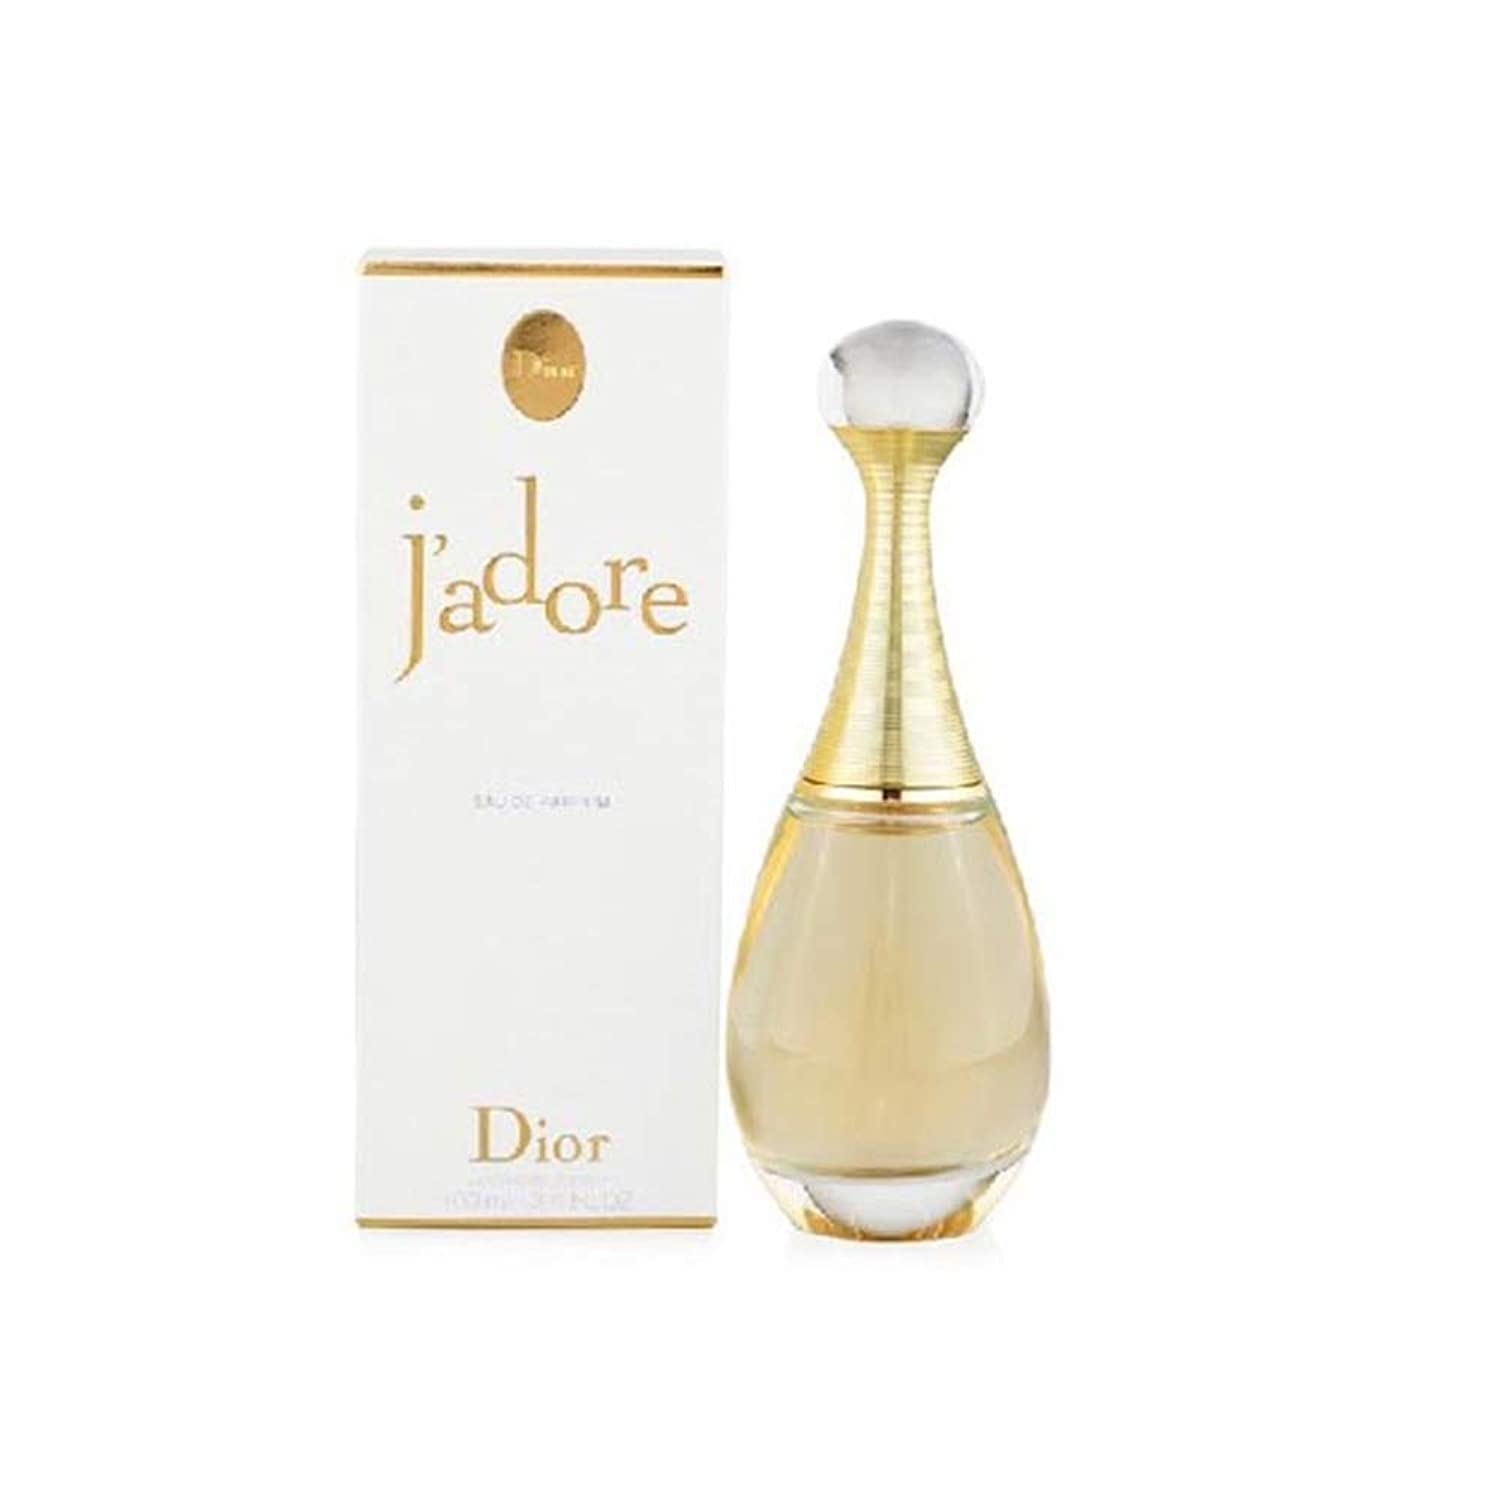 Christian Dior Jadore By  For Women. Eau De Parfum Spray 3.4 Ounces